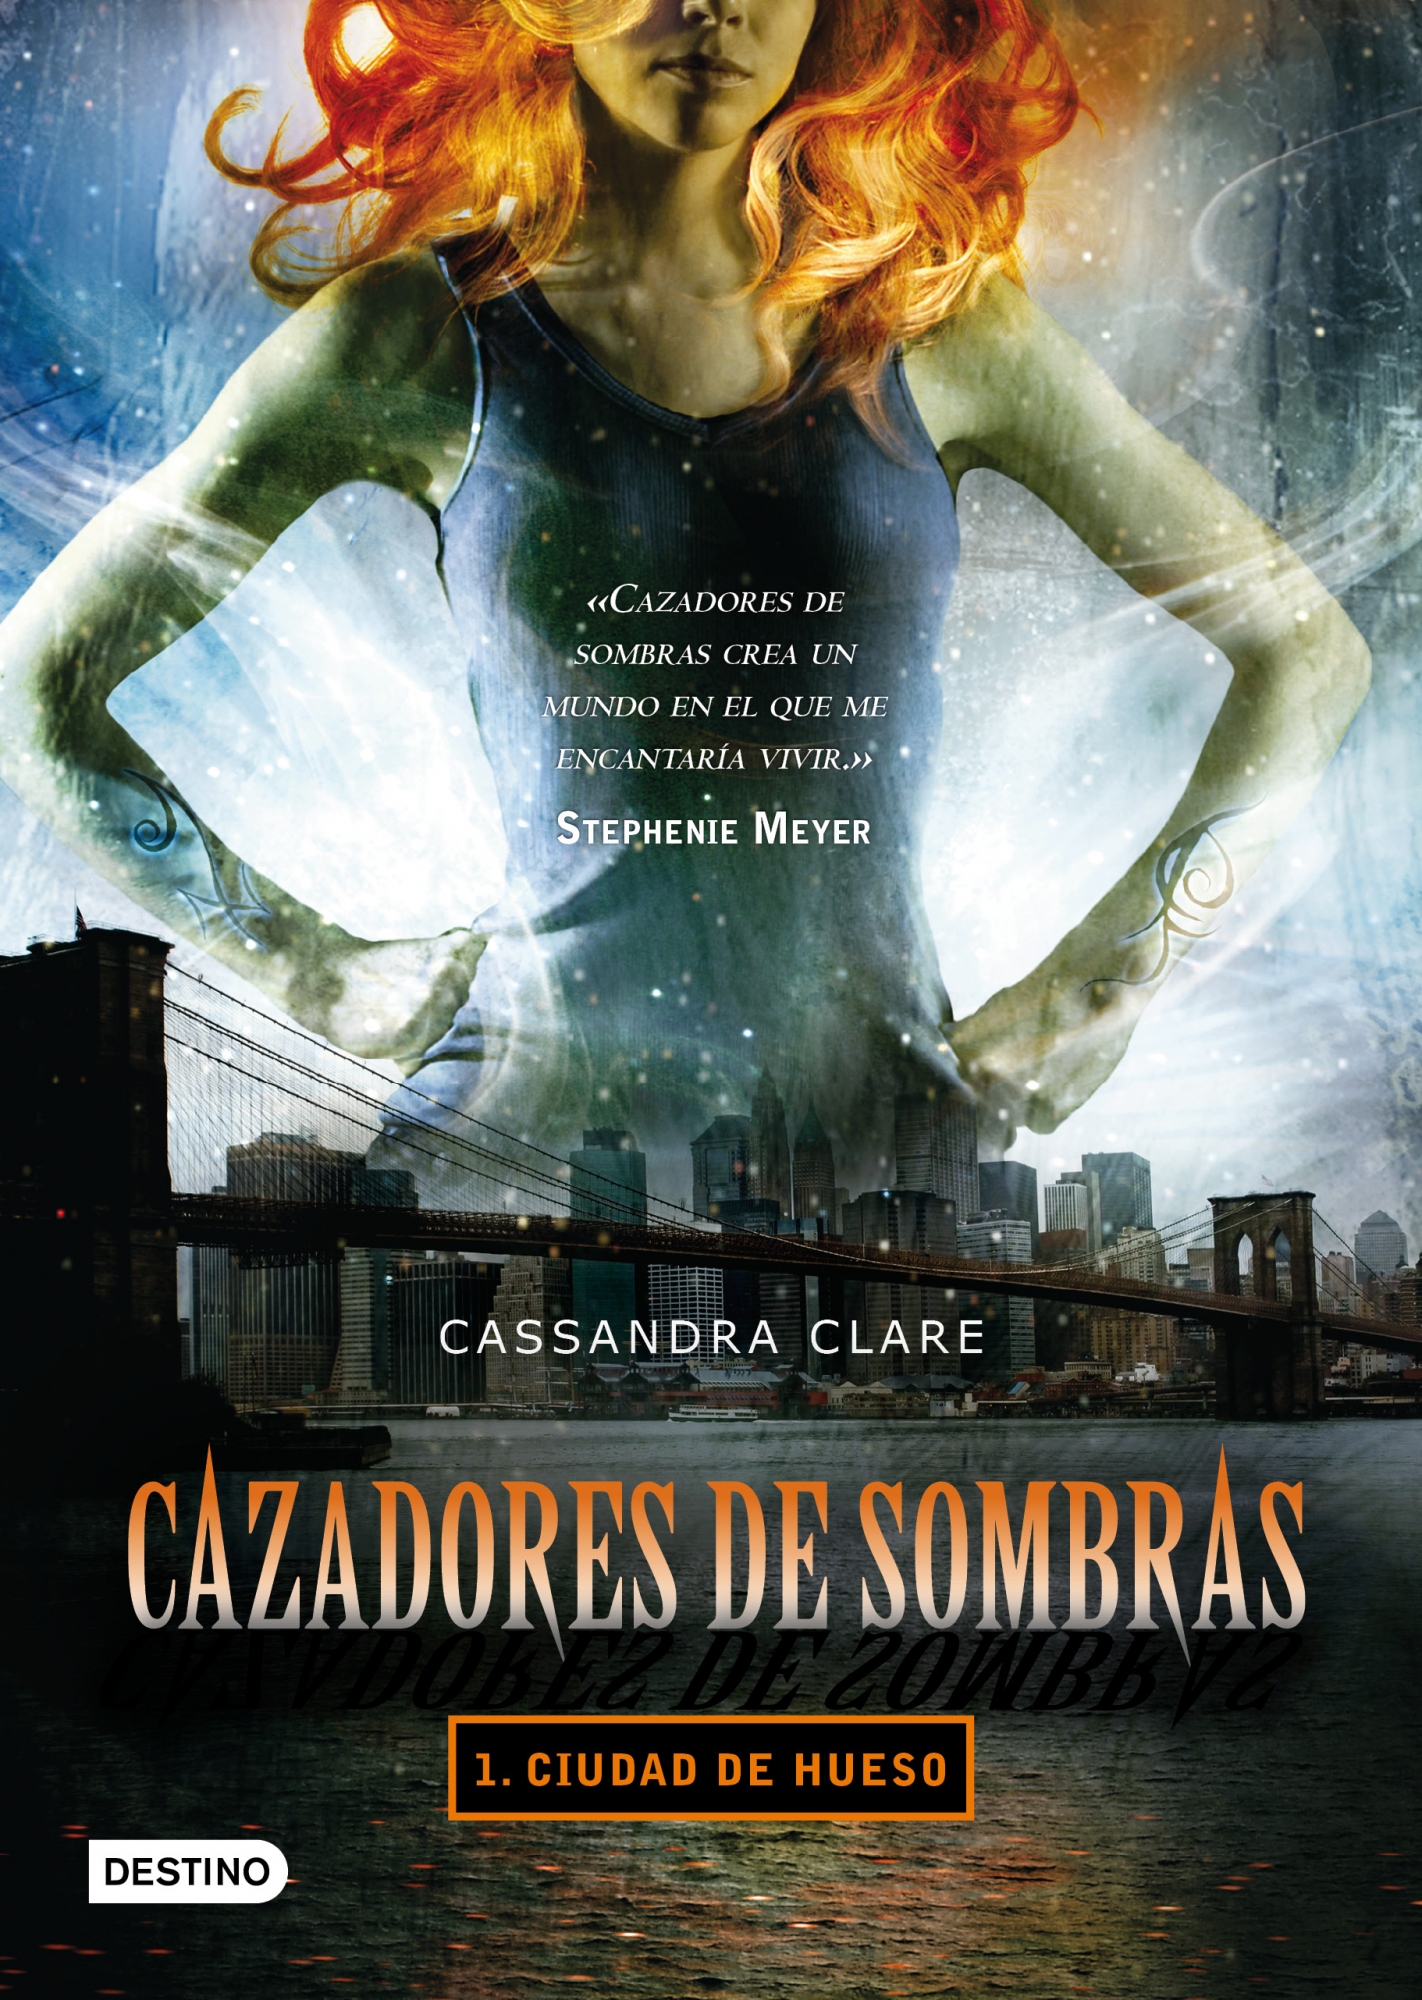 Audiolibro Cazadores de sombras: Ciudad de hueso [1] – Cassandra Clare